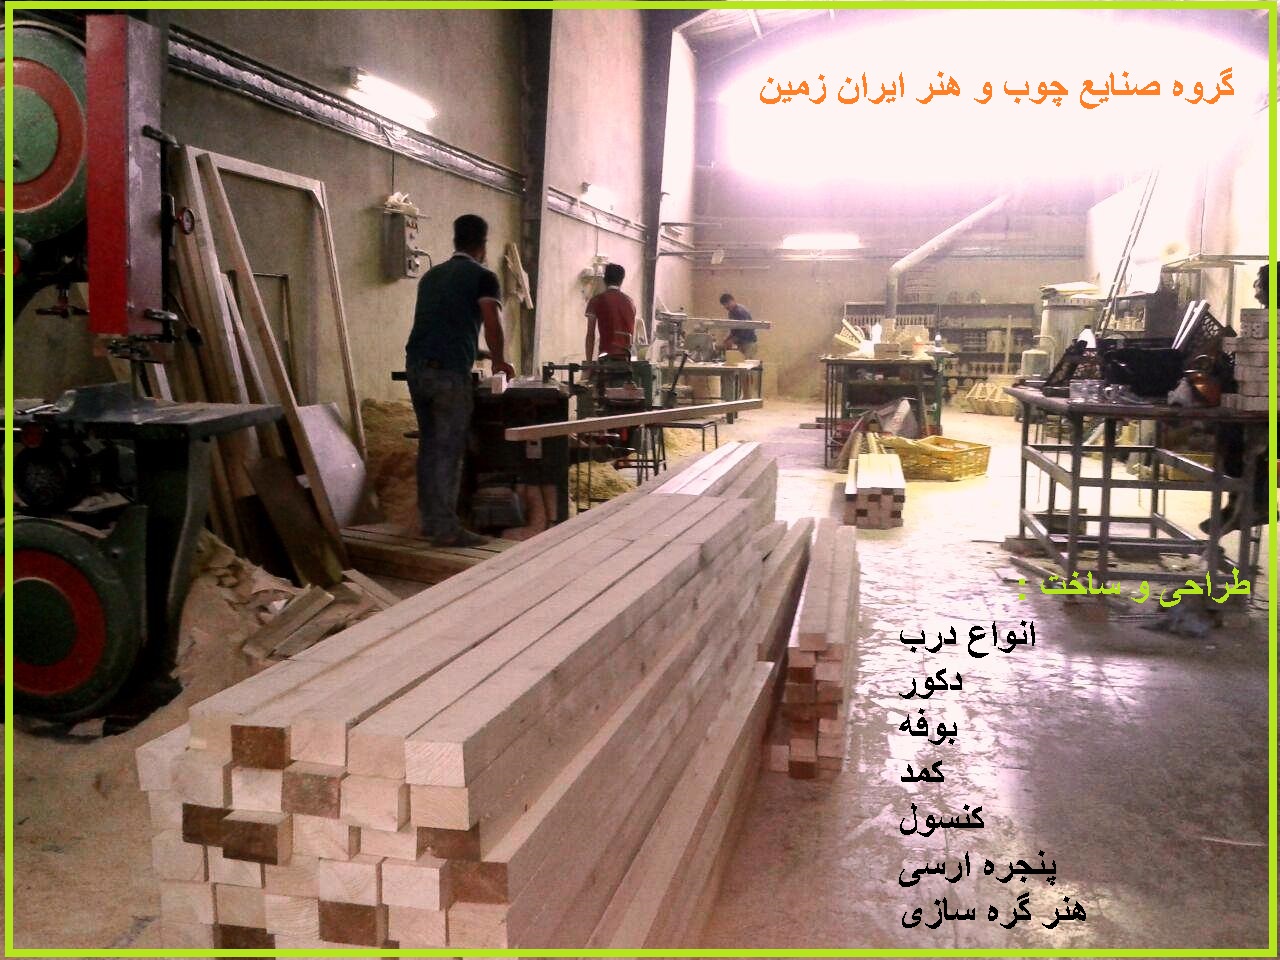 گروه فن و هنر ایران زمین طراح و سازنده انواع درب چوبی , بوفه و ویترین , کنسول و میز چوبی , پنجره ارسی و گره چینی